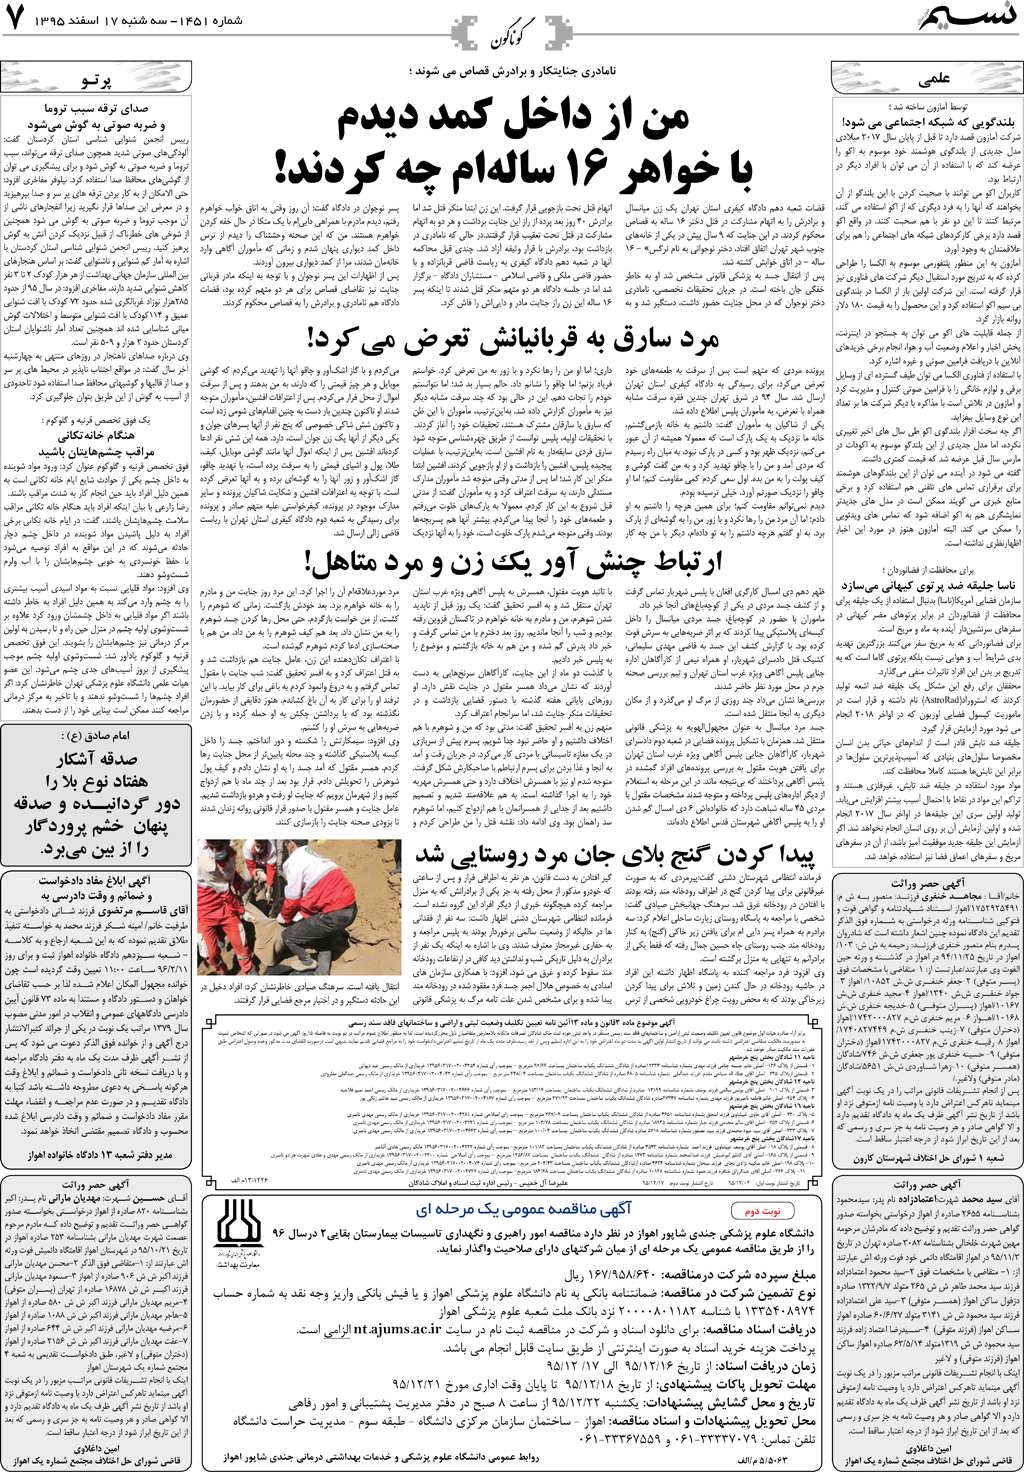 صفحه گوناگون روزنامه نسیم شماره 1451